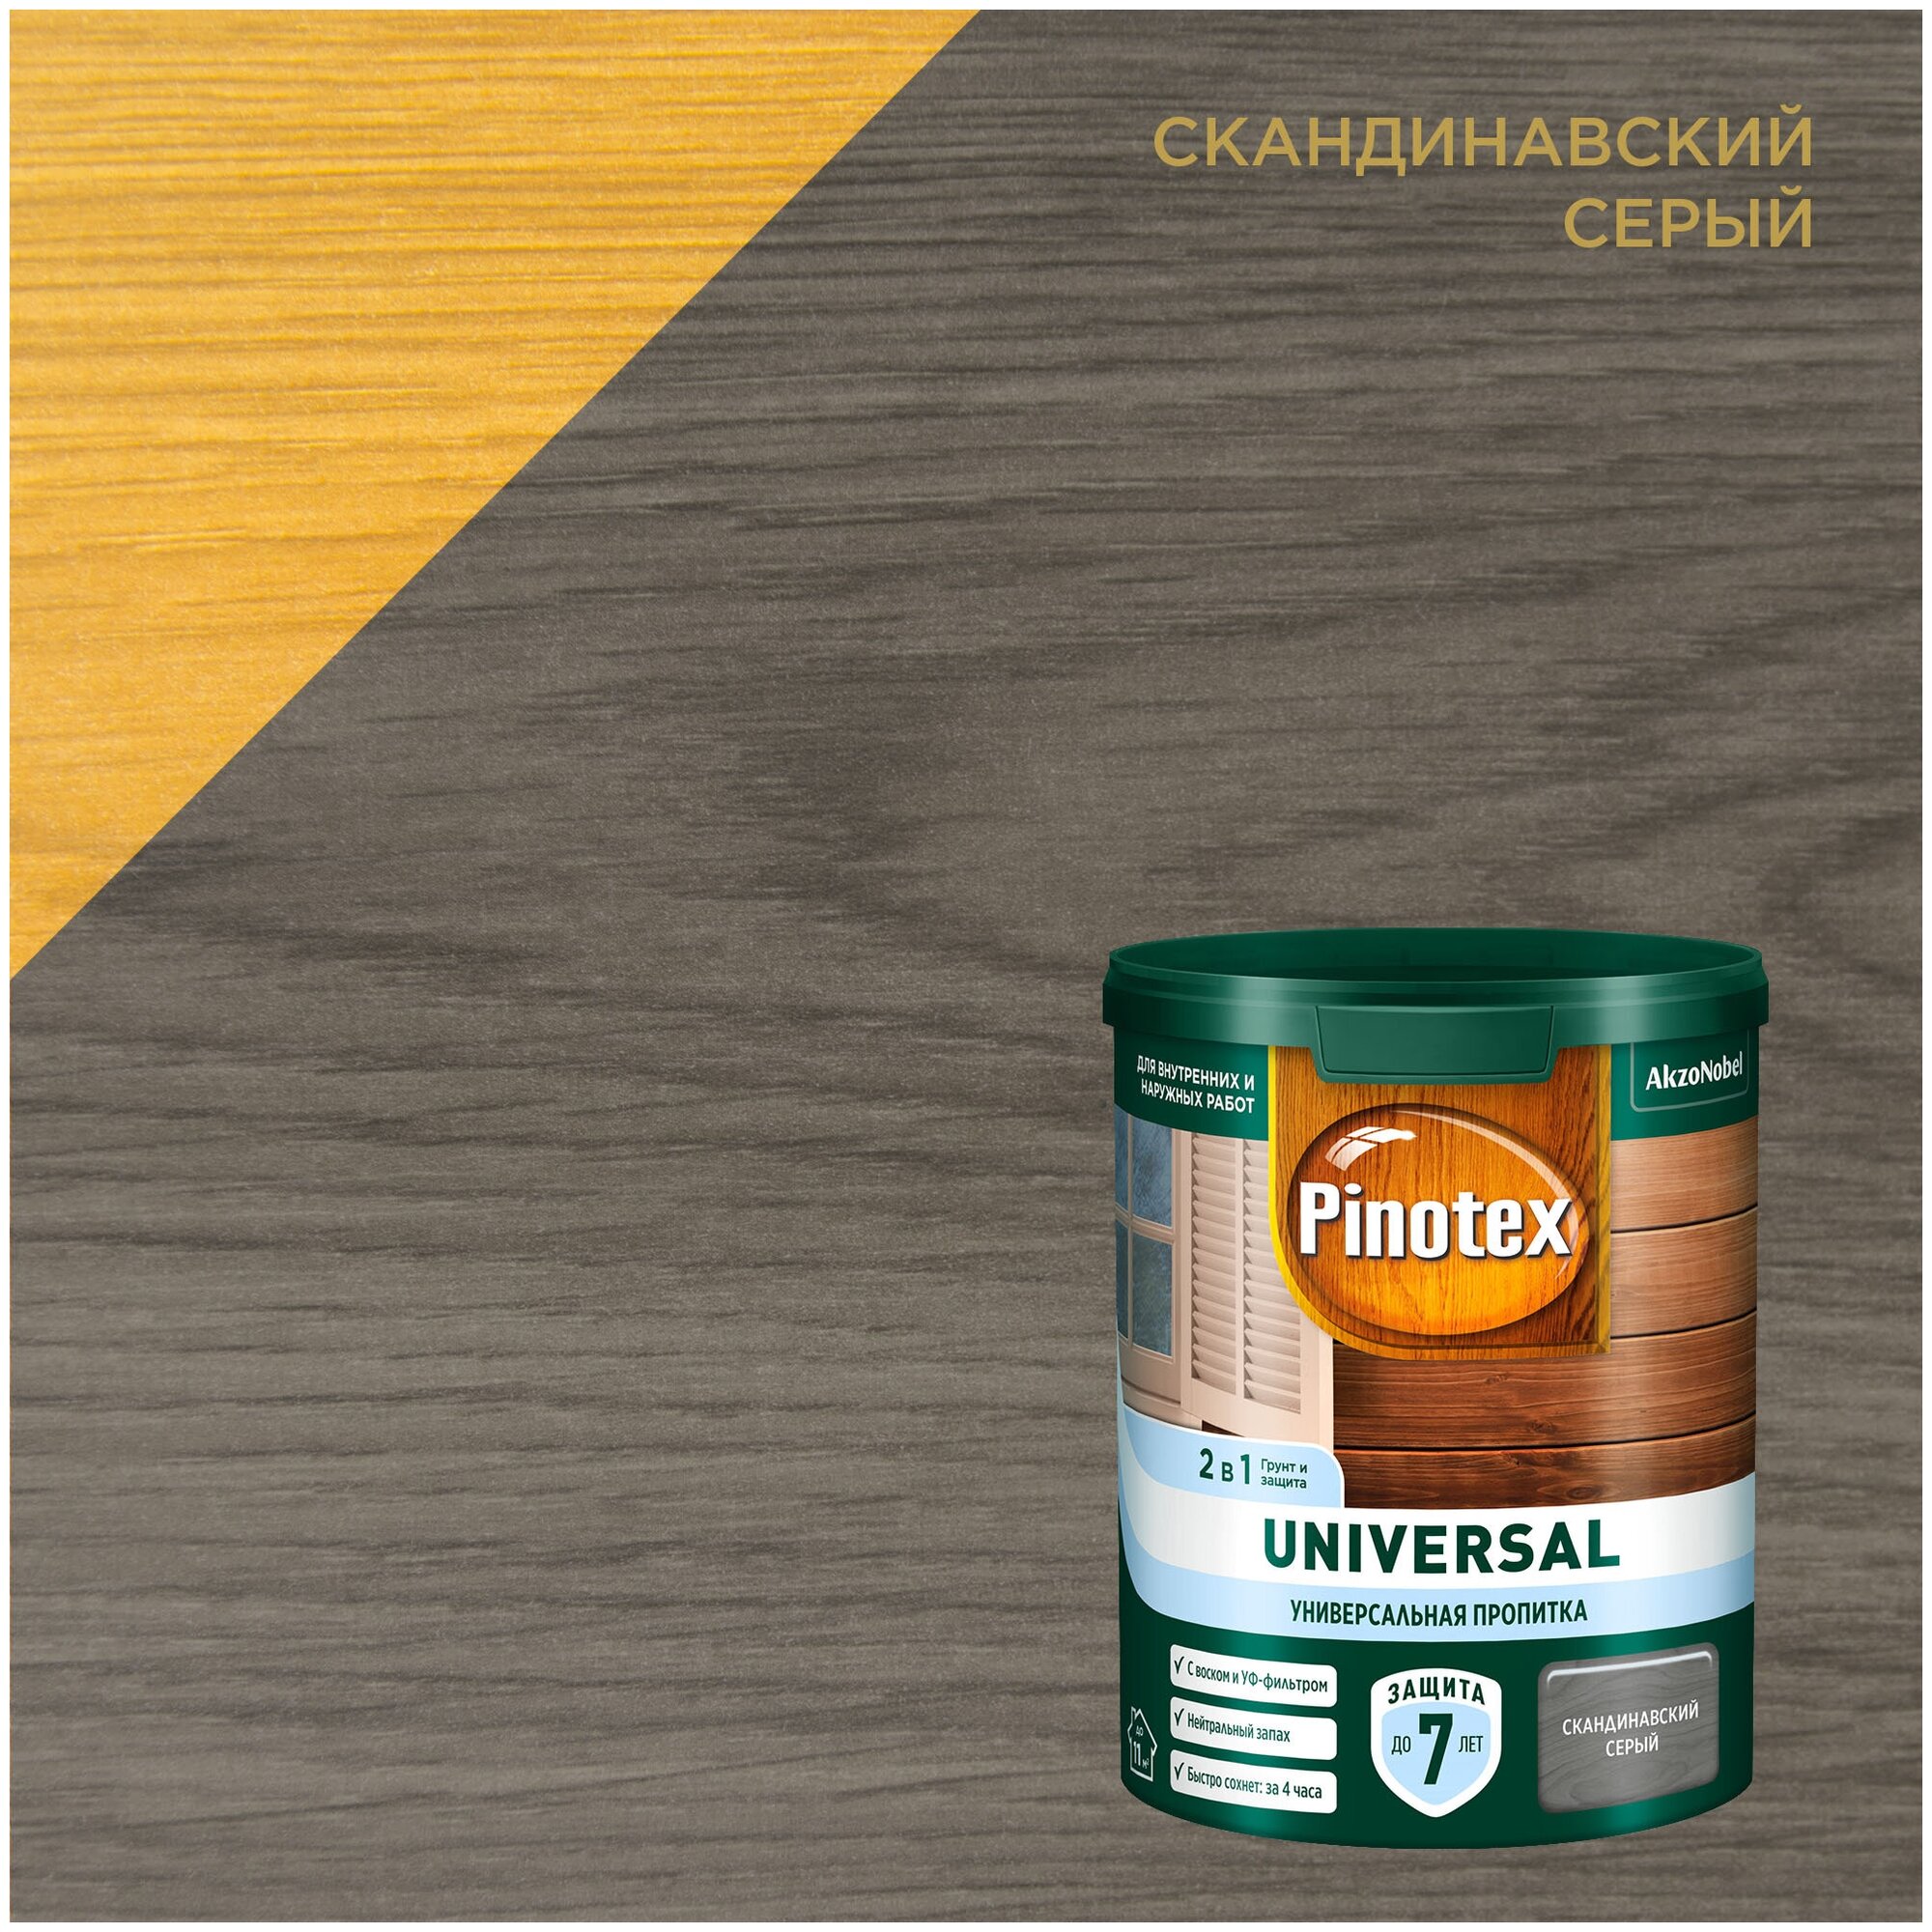 Пропитка универсальная 2 в 1 Universal PINOTEX 0,9 л скандинавский серый